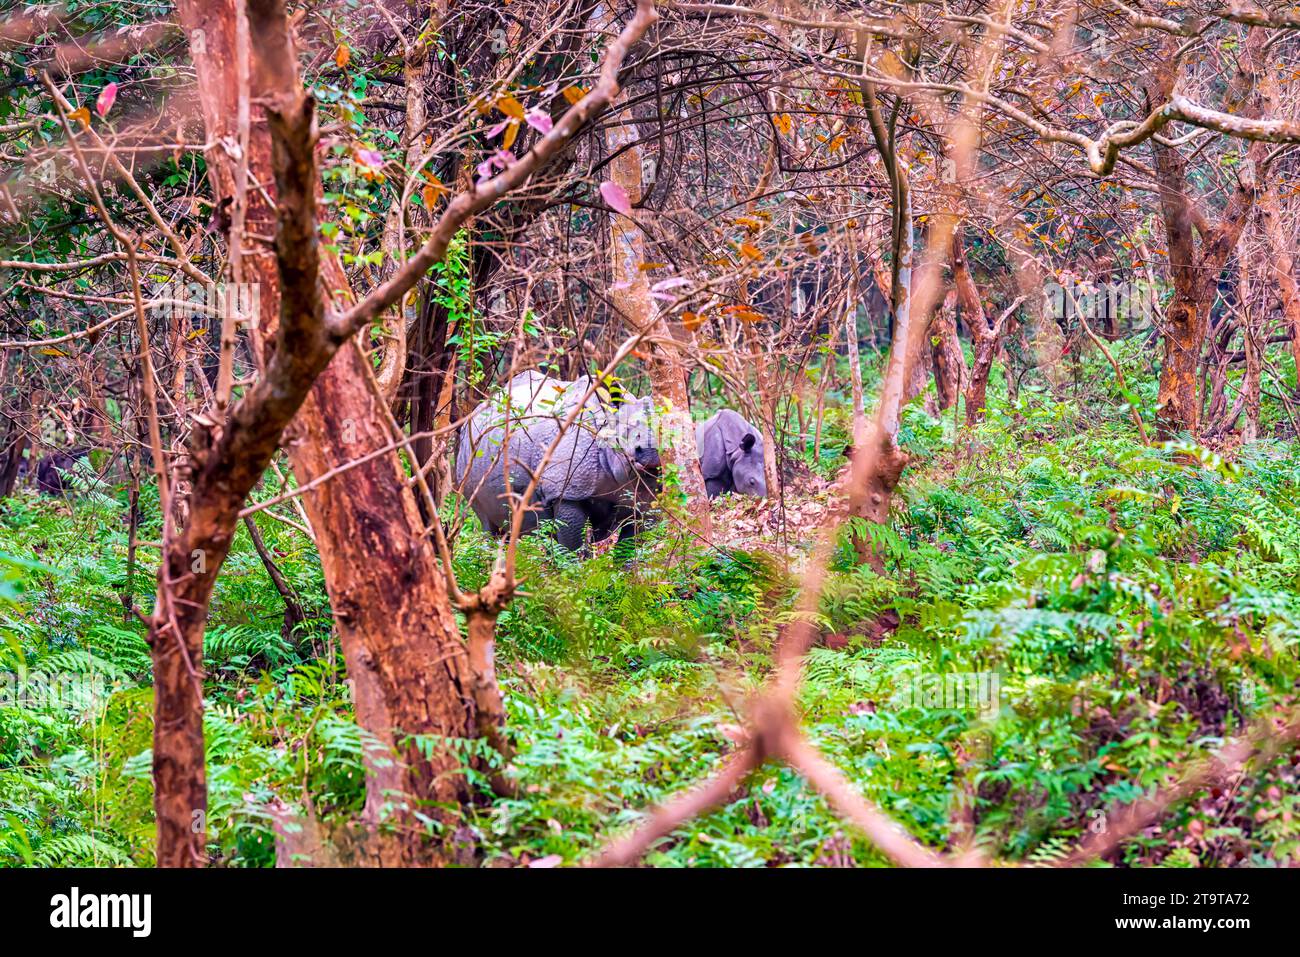 Un grand rhinocéros indien qui se nourrit dans une zone boisée épaisse du Sanctuaire de faune de Pobitora à Assam, en Inde. Banque D'Images